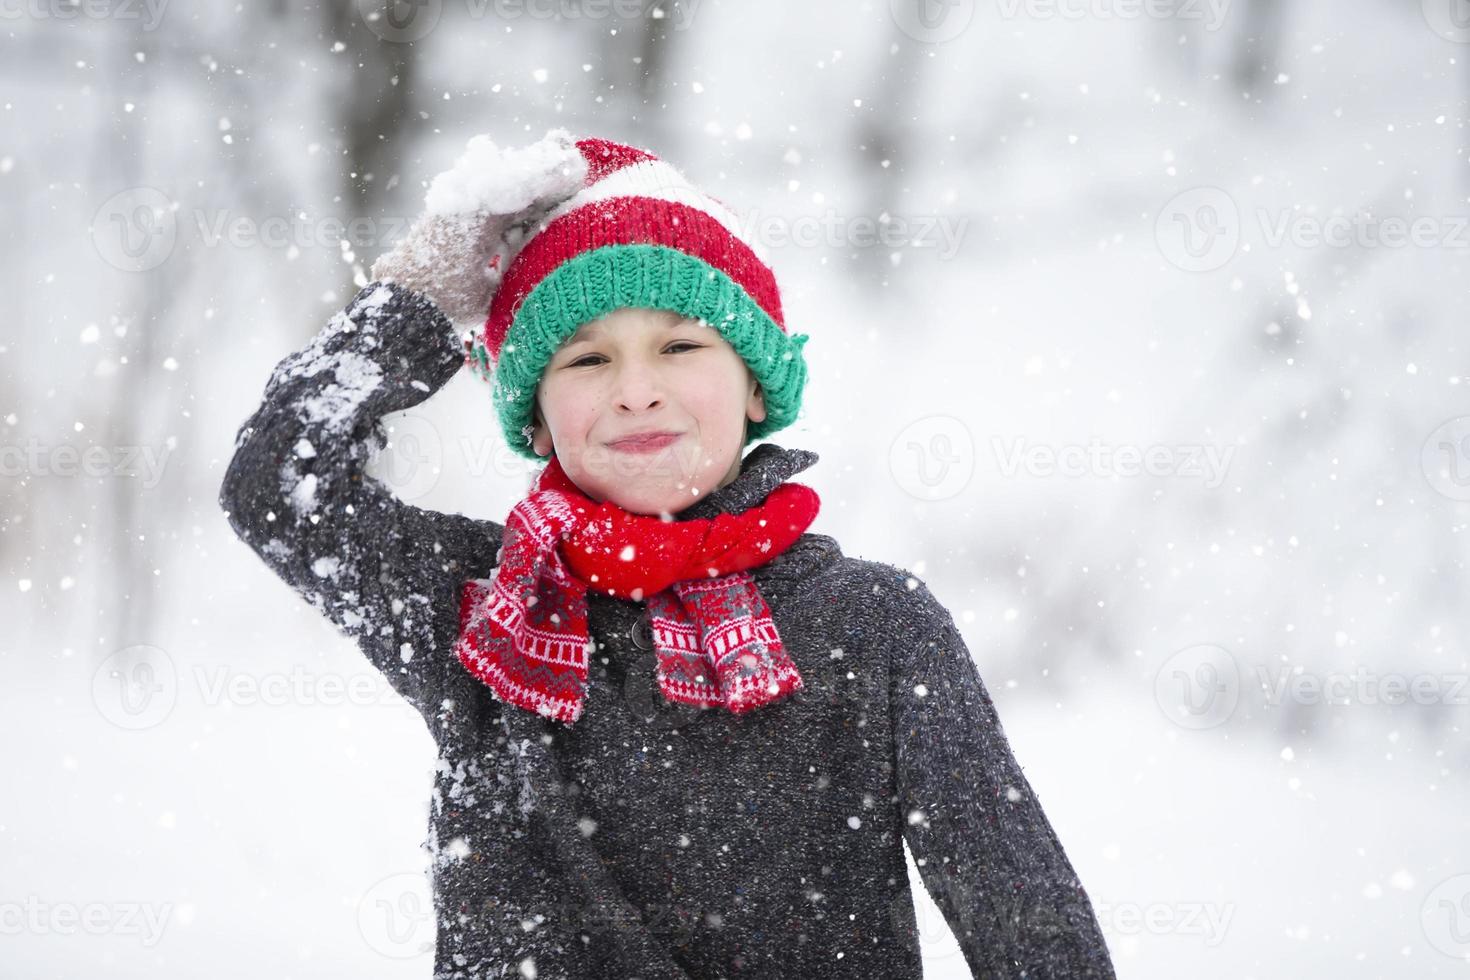 Petit Garçon Dans L'habillement D'hiver Marchant Dans La Neige, Vue Du Dos  Image stock - Image du gens, personne: 85892849